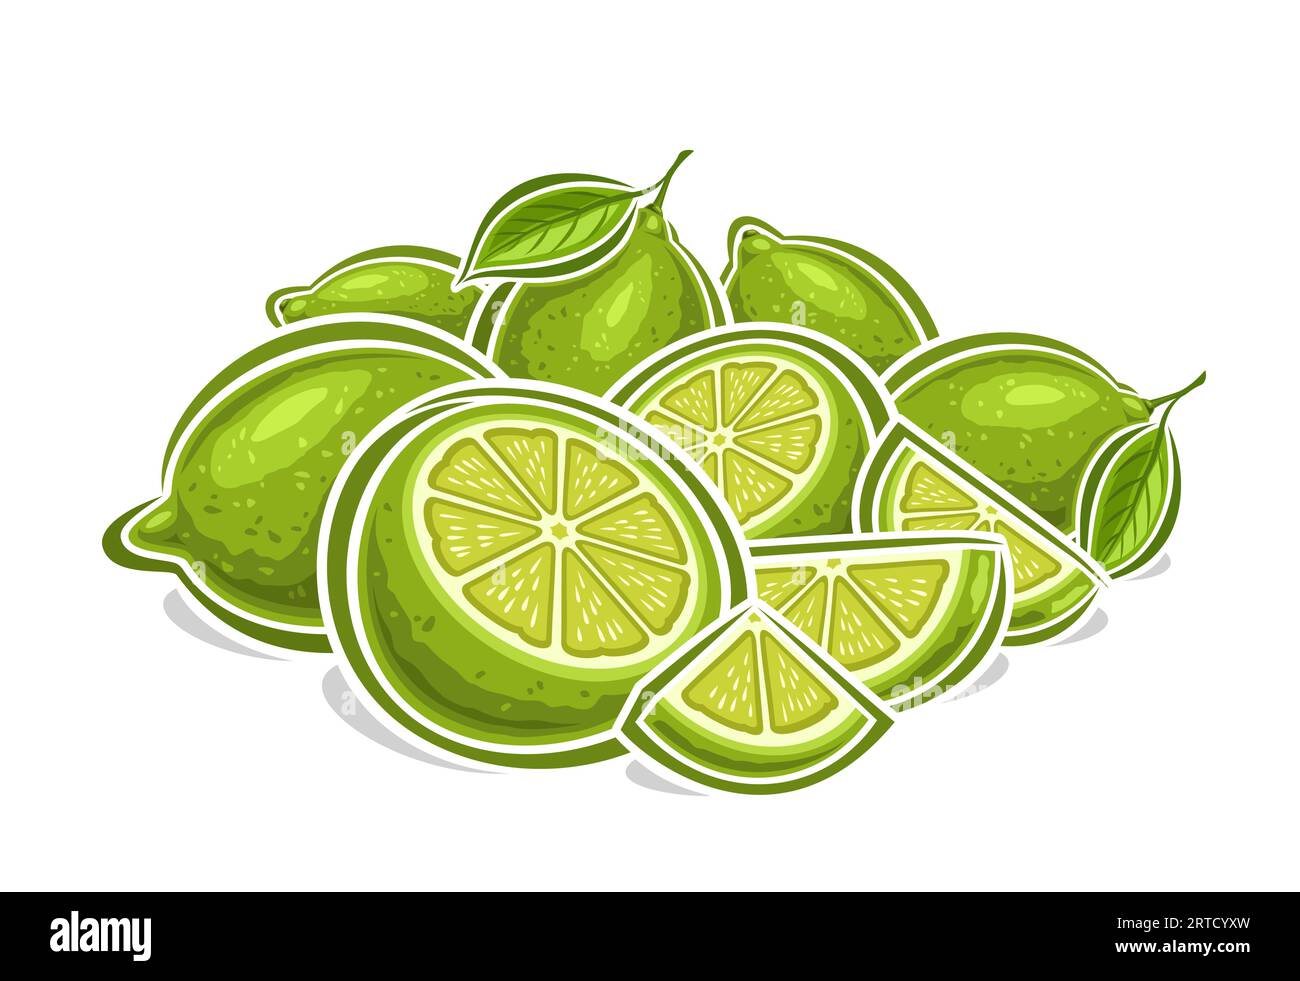 Logo vettoriale per Limes, poster orizzontale decorativo con disegno cartoni animati composizione STILL Life in lime verde fruttato, stampa frutta con molti intagli e tritati Illustrazione Vettoriale